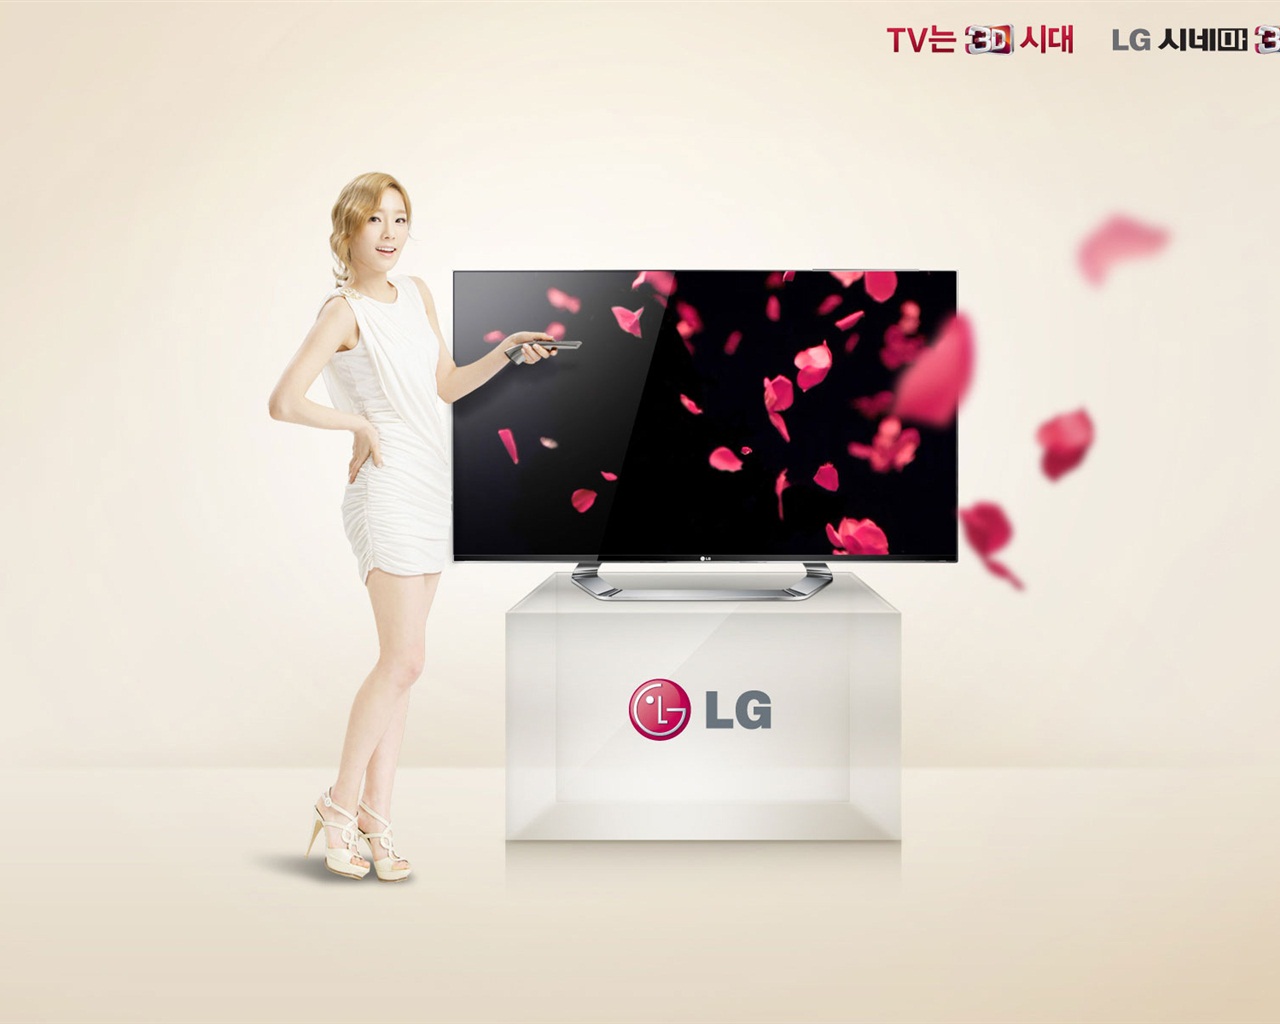 少女时代 ACE 和 LG 广告代言 高清壁纸14 - 1280x1024